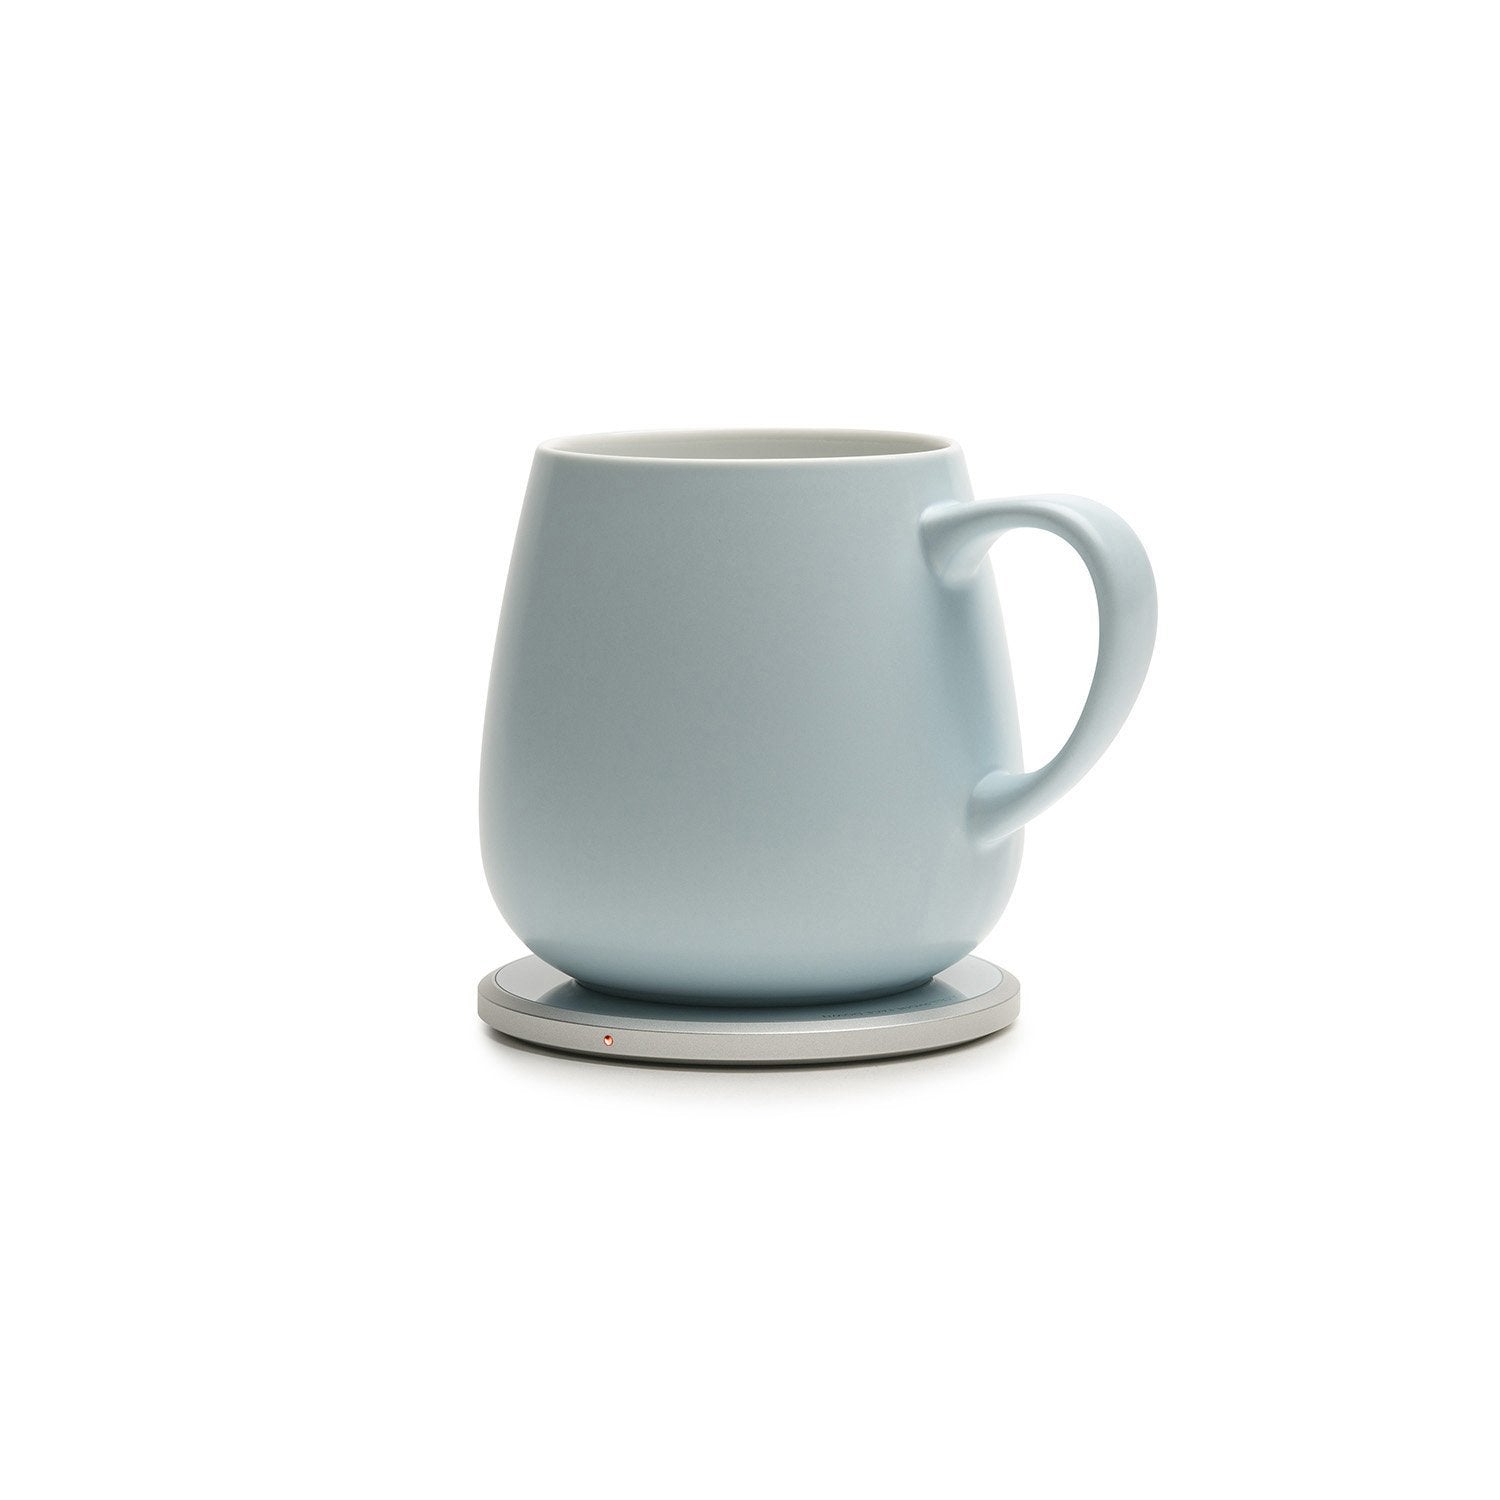 Ui Plus - Self-heating Mug Set - Sky Blue